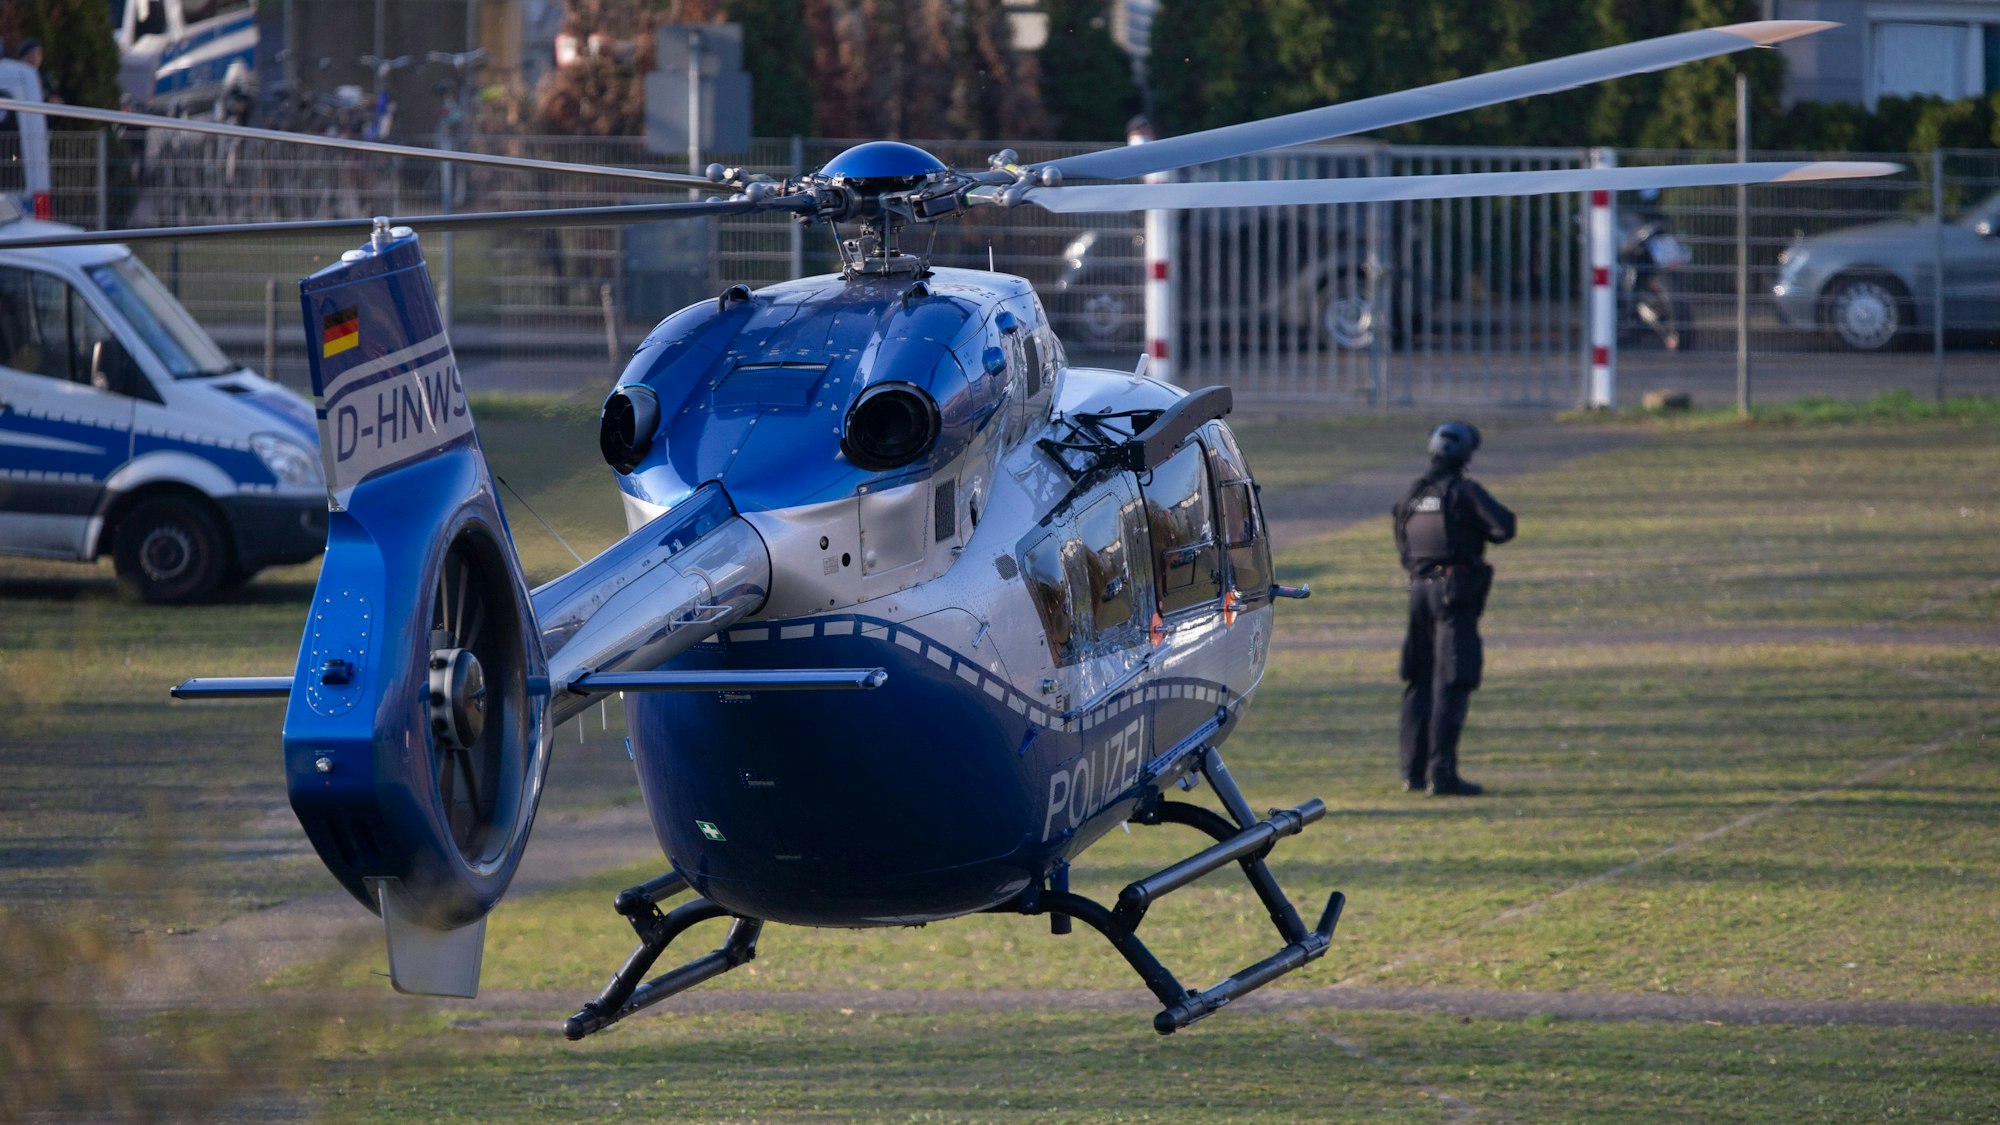 Der Hubschrauber mit dem Angeklagten Thomas Drach landet auf dem Gelände des Justizzentrums Köln.